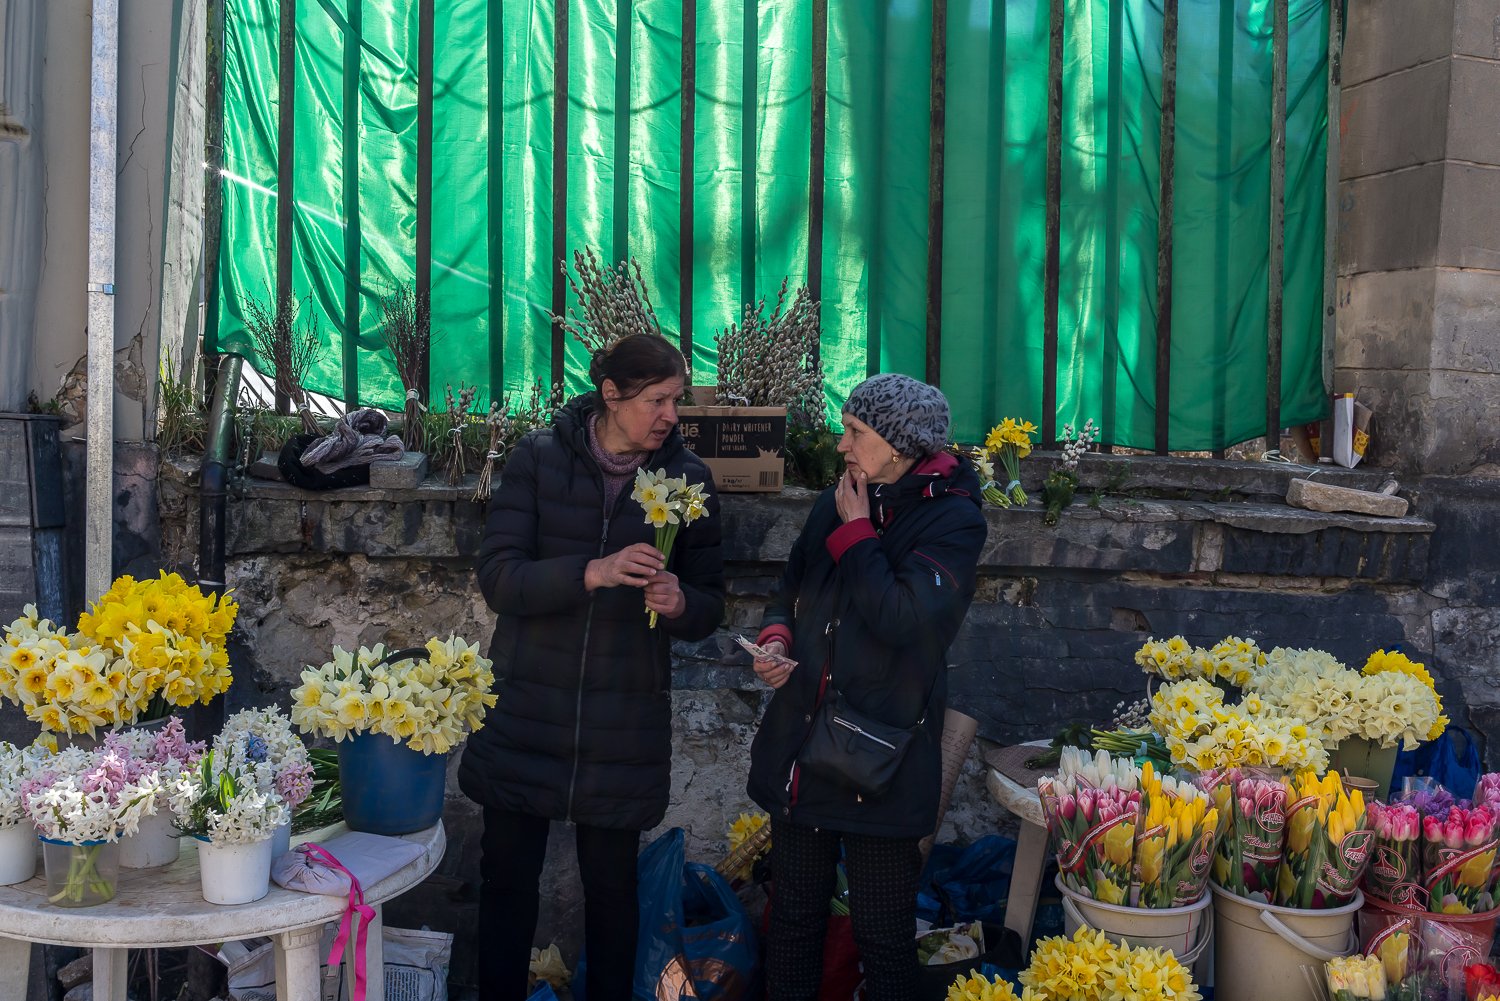  Flower sellers do business on the sidewalk on Thursday, April 14, 2022 in Lviv, Ukraine. 